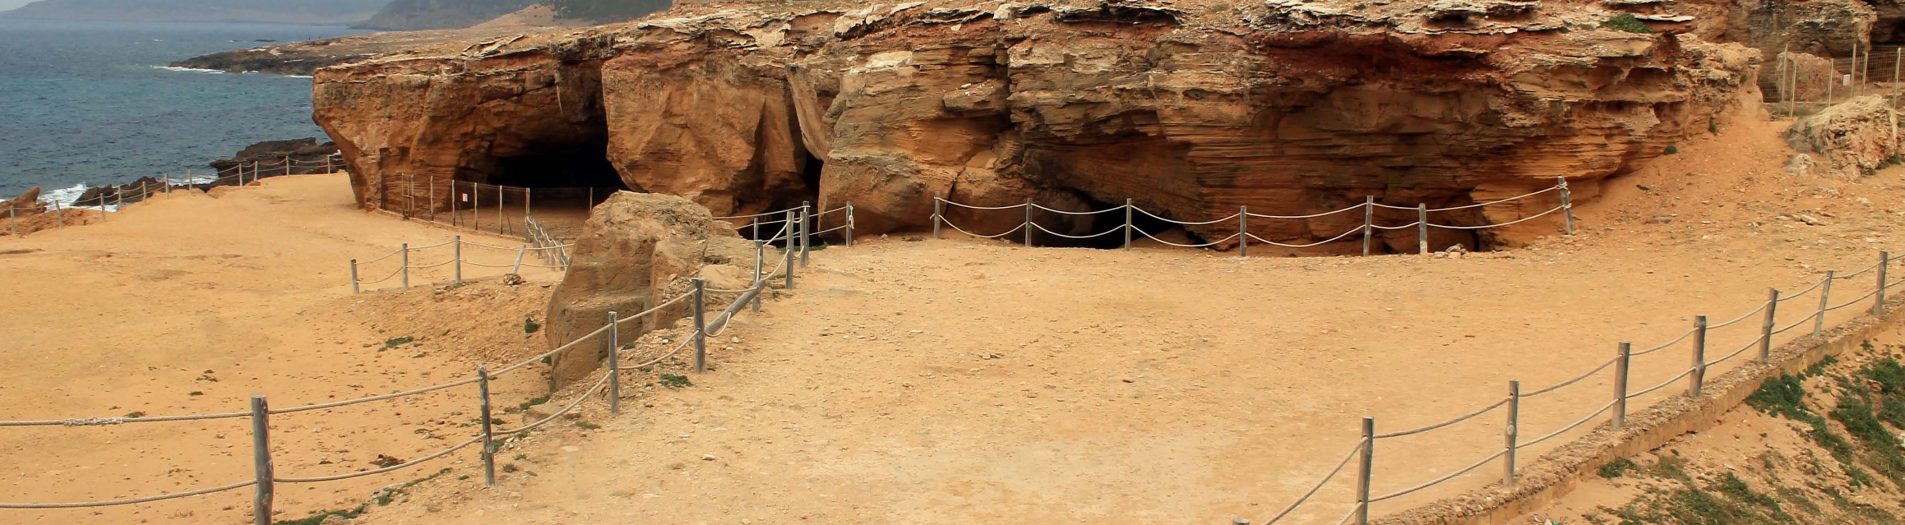 Les grottes d’Haouaria